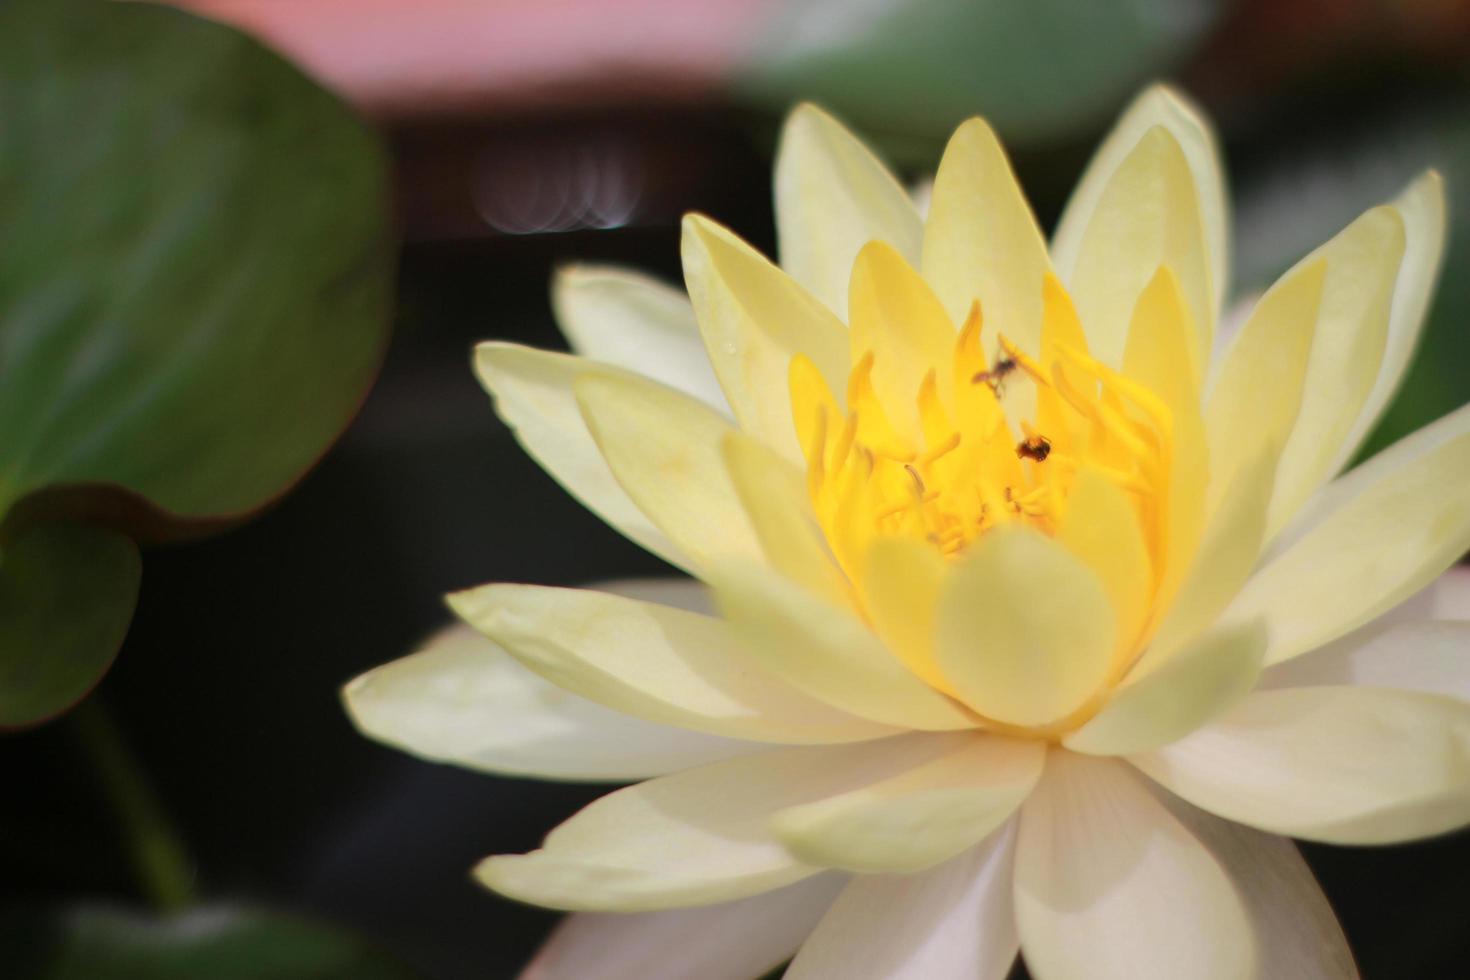 hermoso nenúfar o flor de loto en el estanque foto